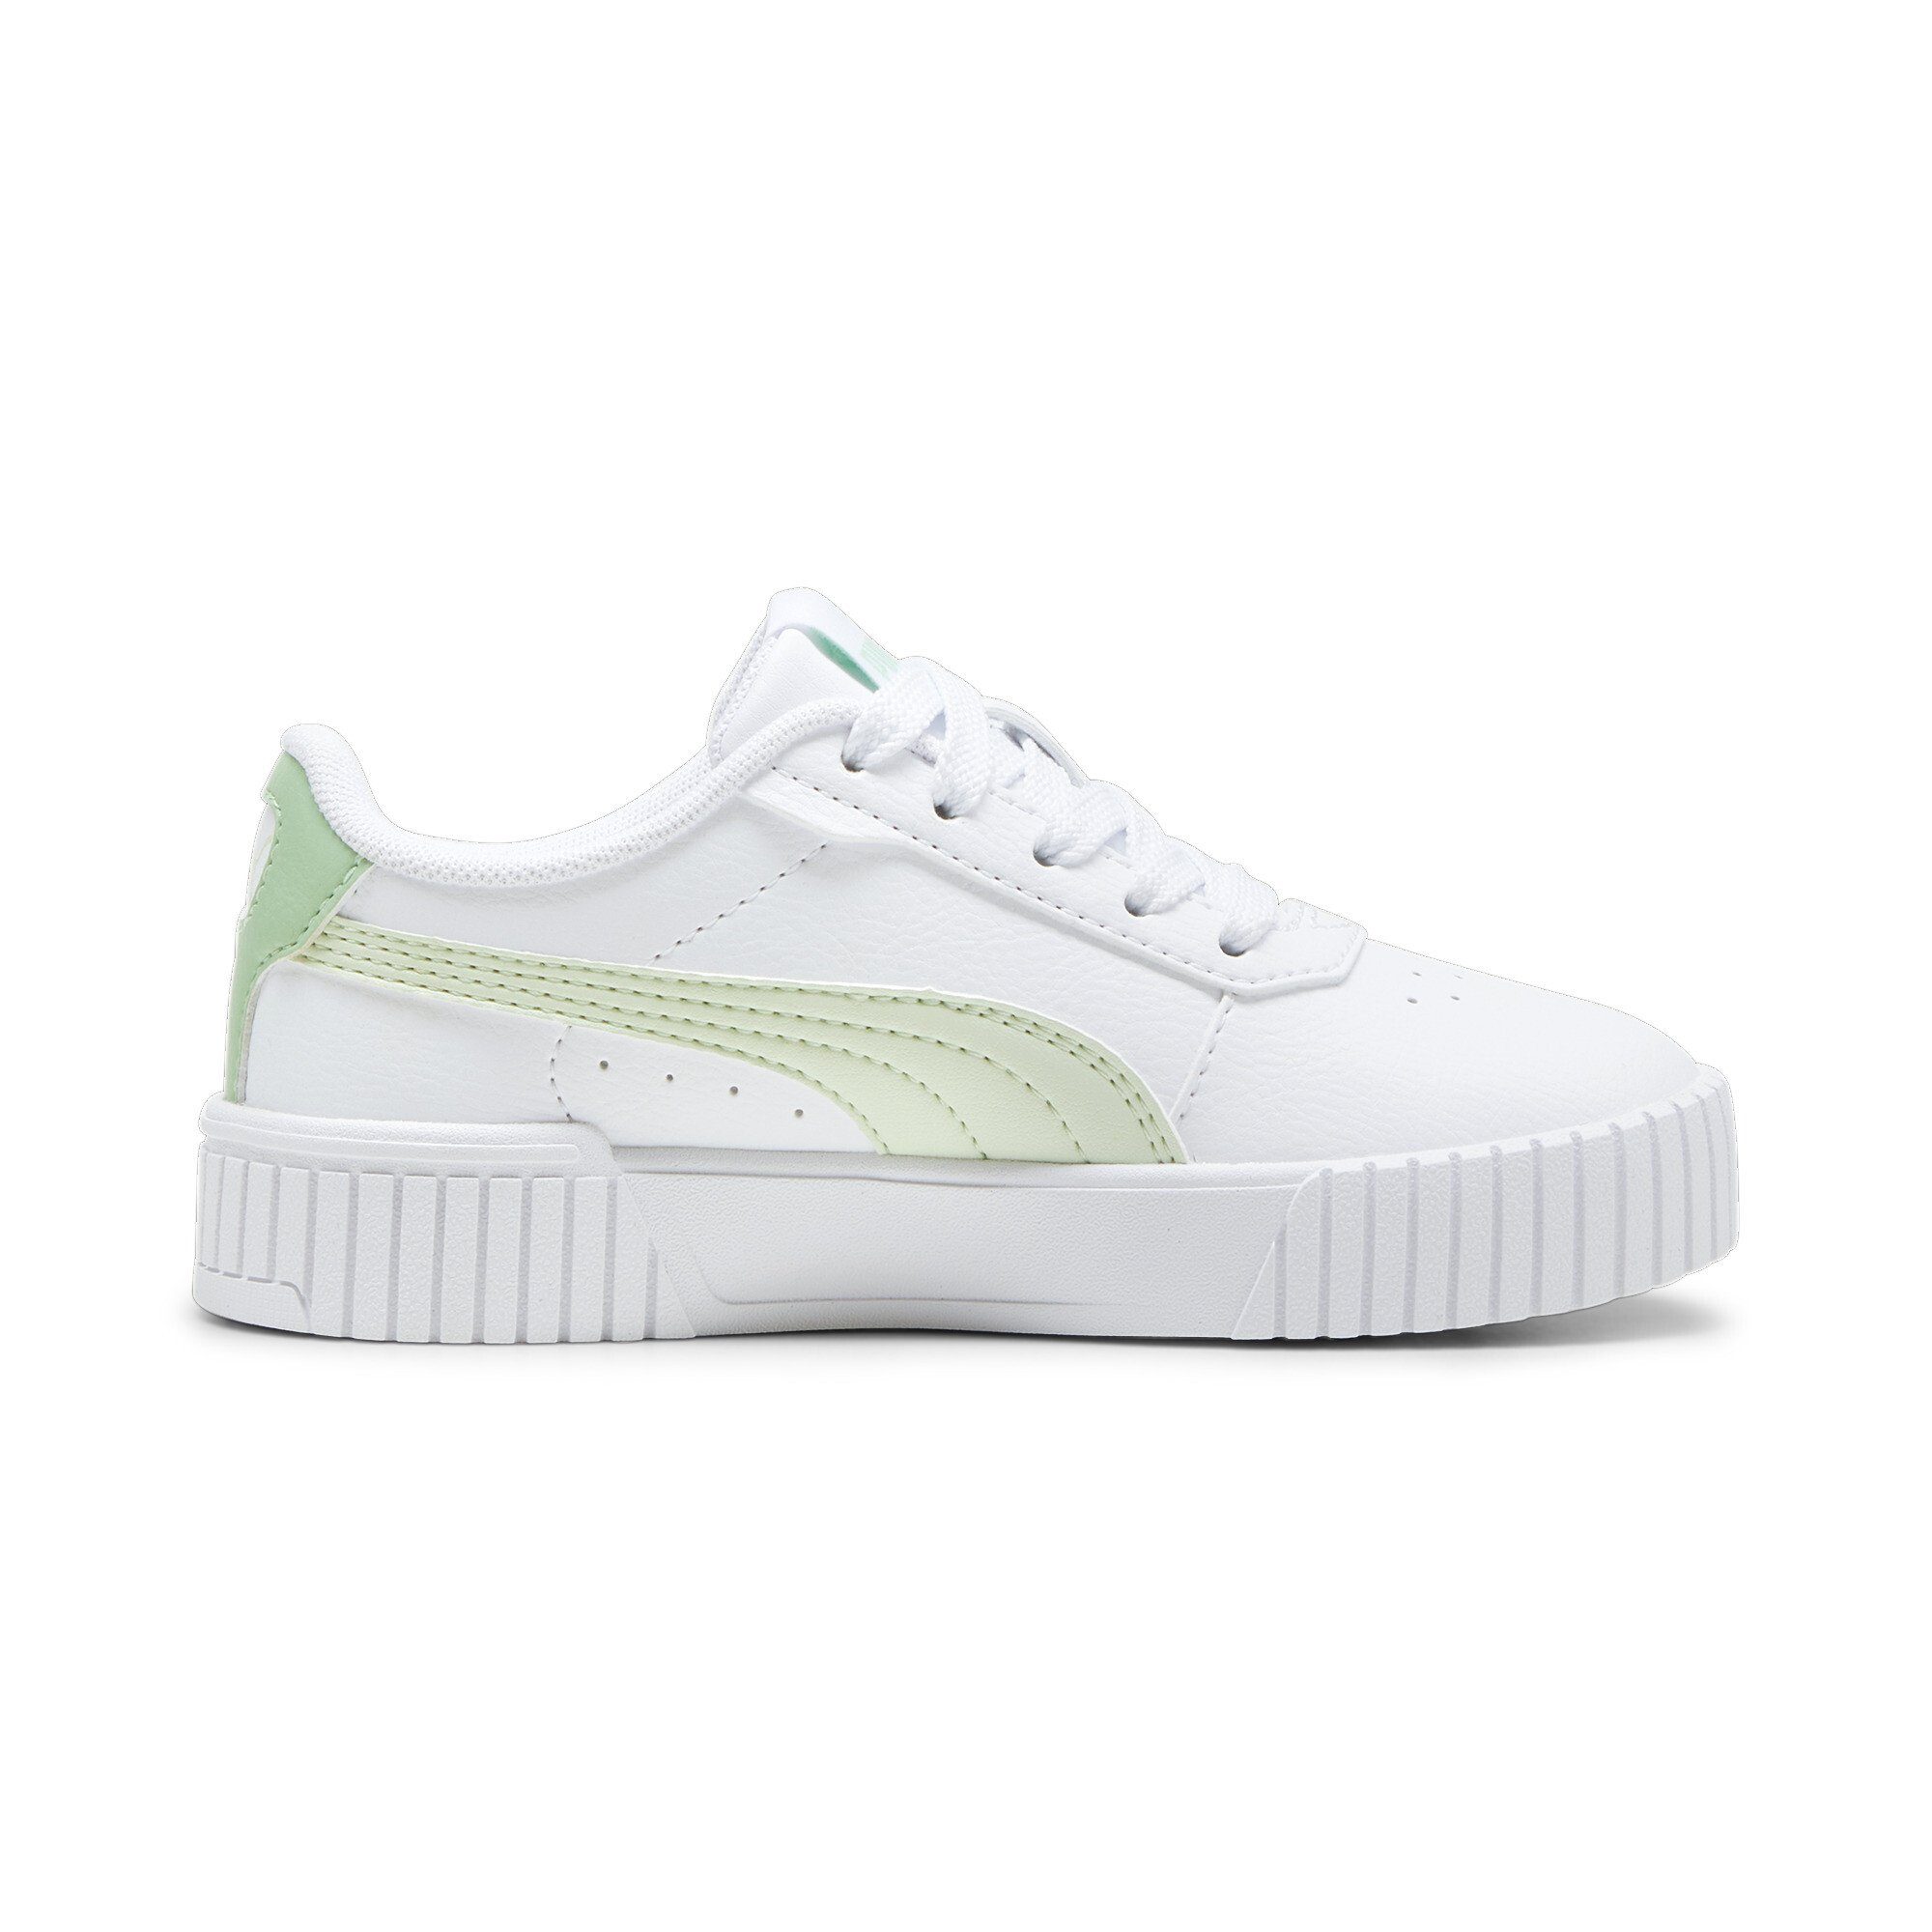 Carina Jugendliche Illusion 2.0 PUMA Pure Sneaker White Sneakers Green